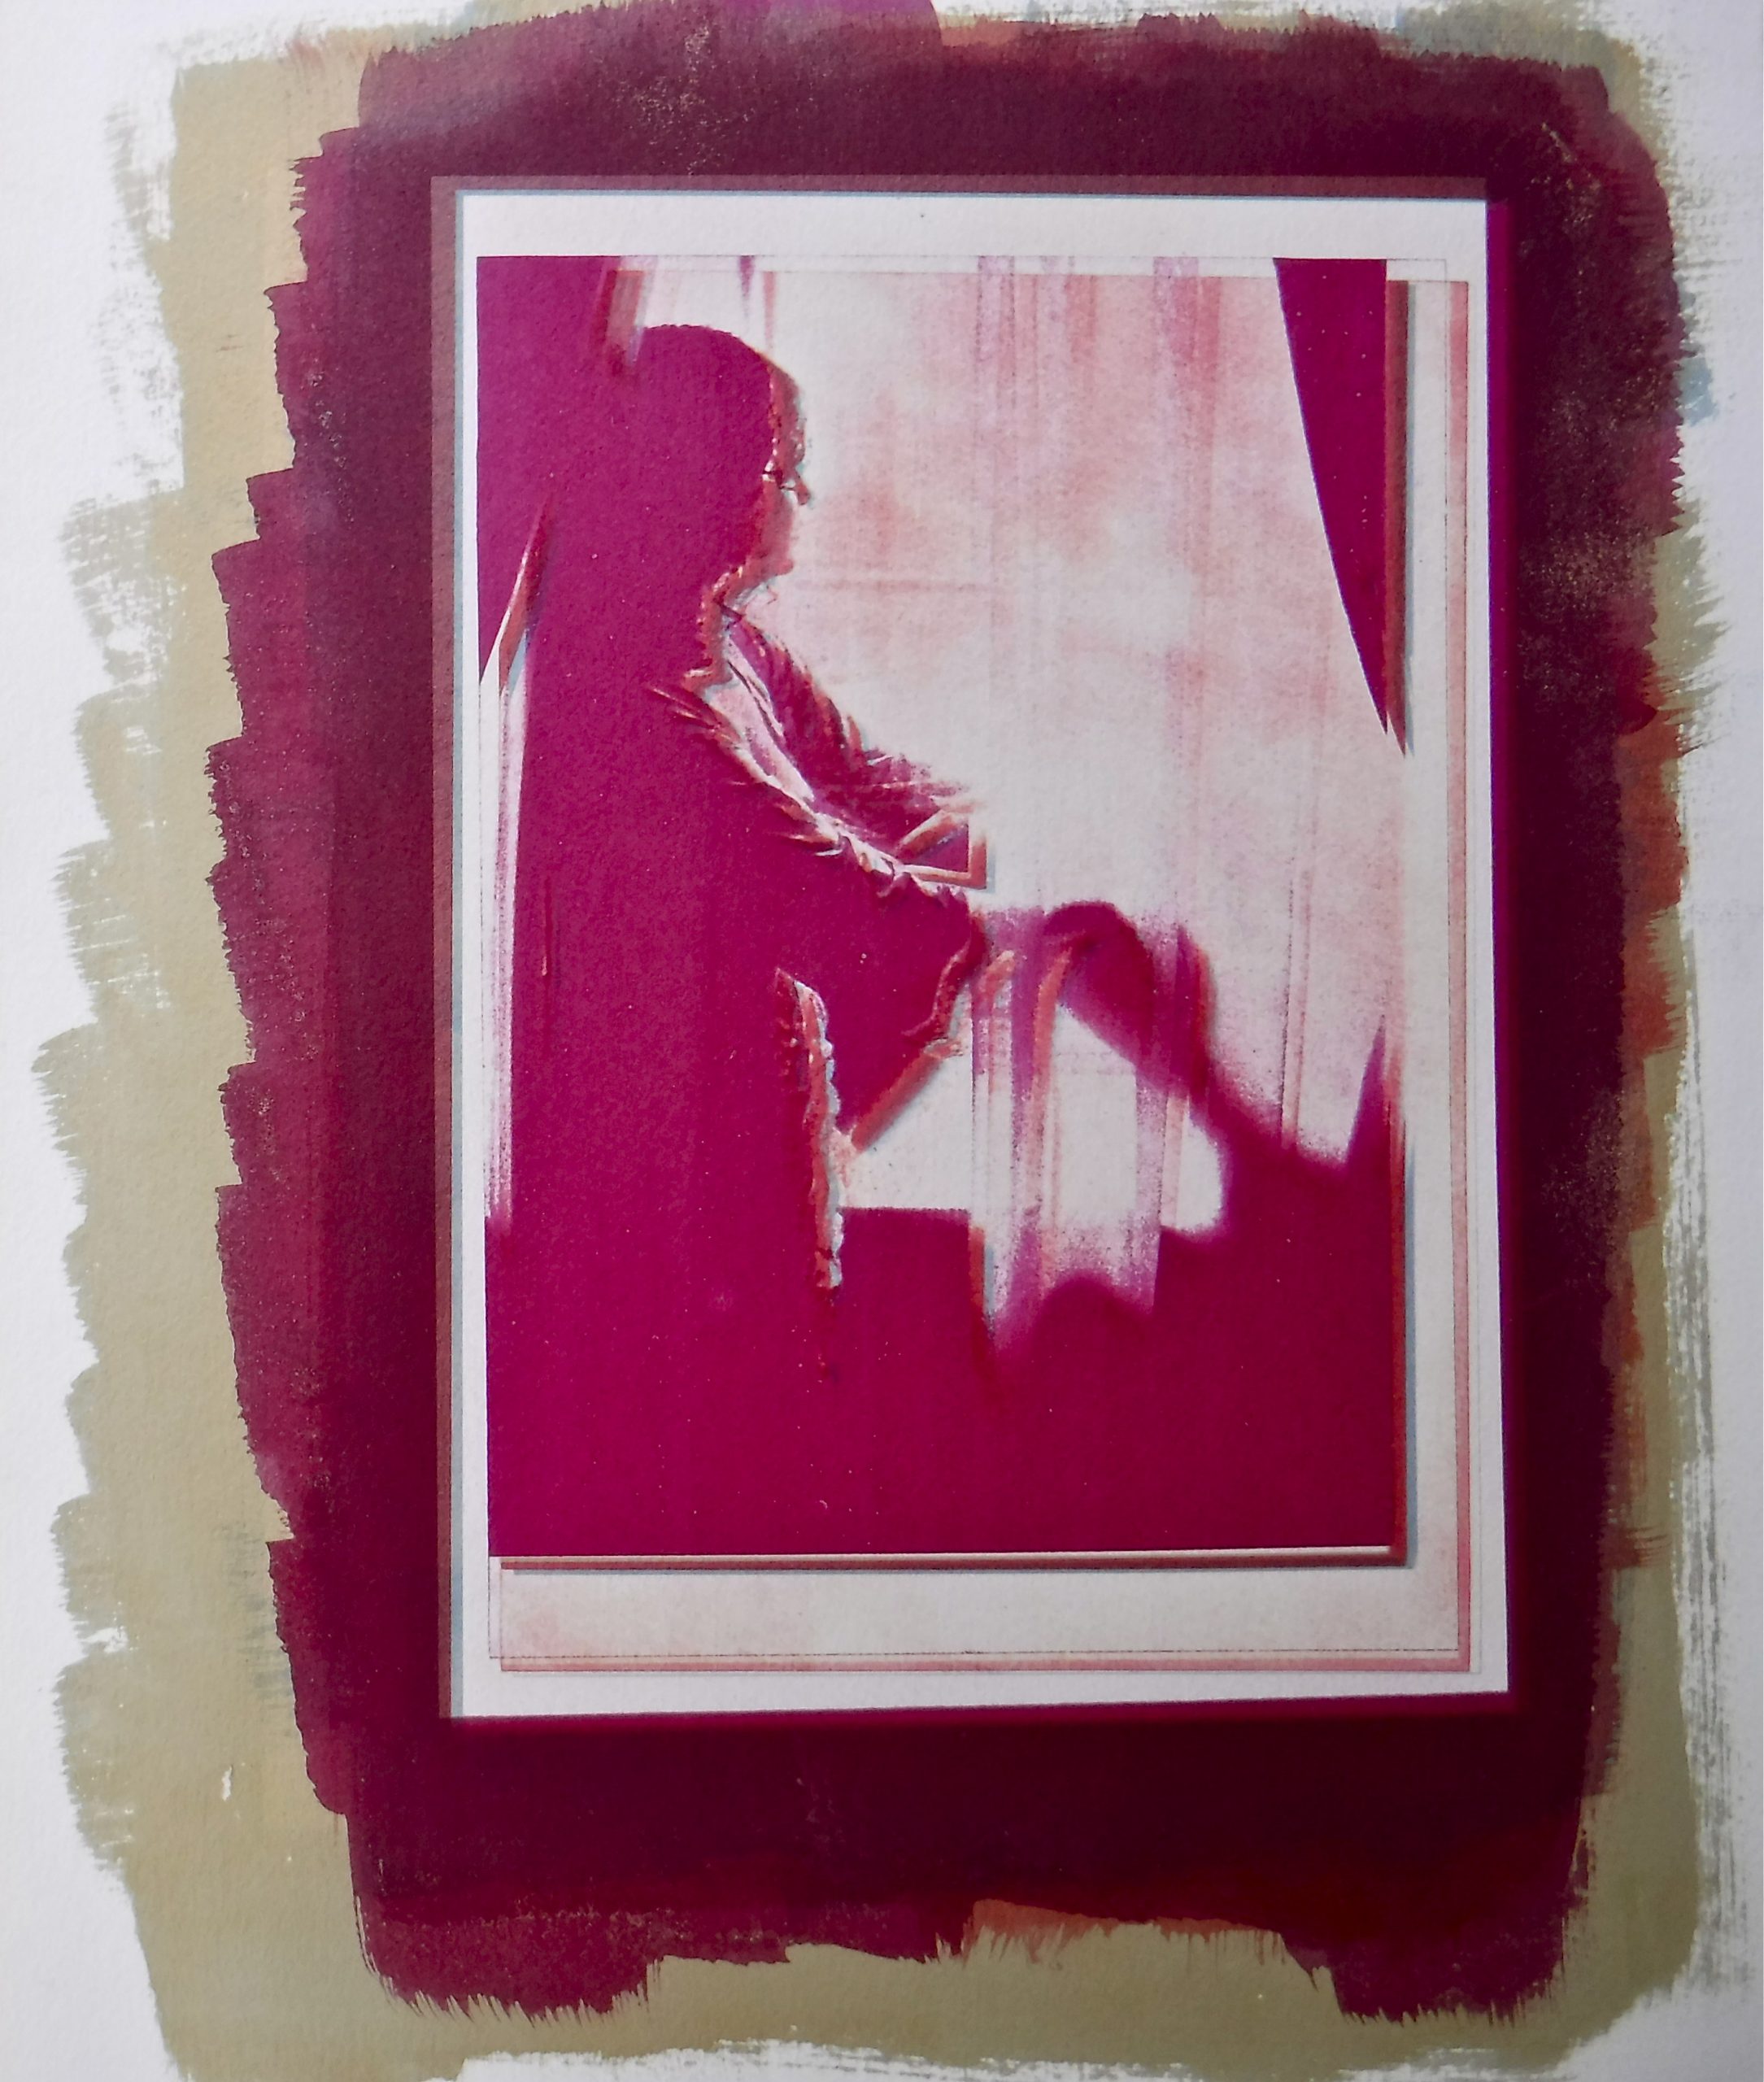     Frances Patella, Sedition, gum bichromate on paper, 2011

